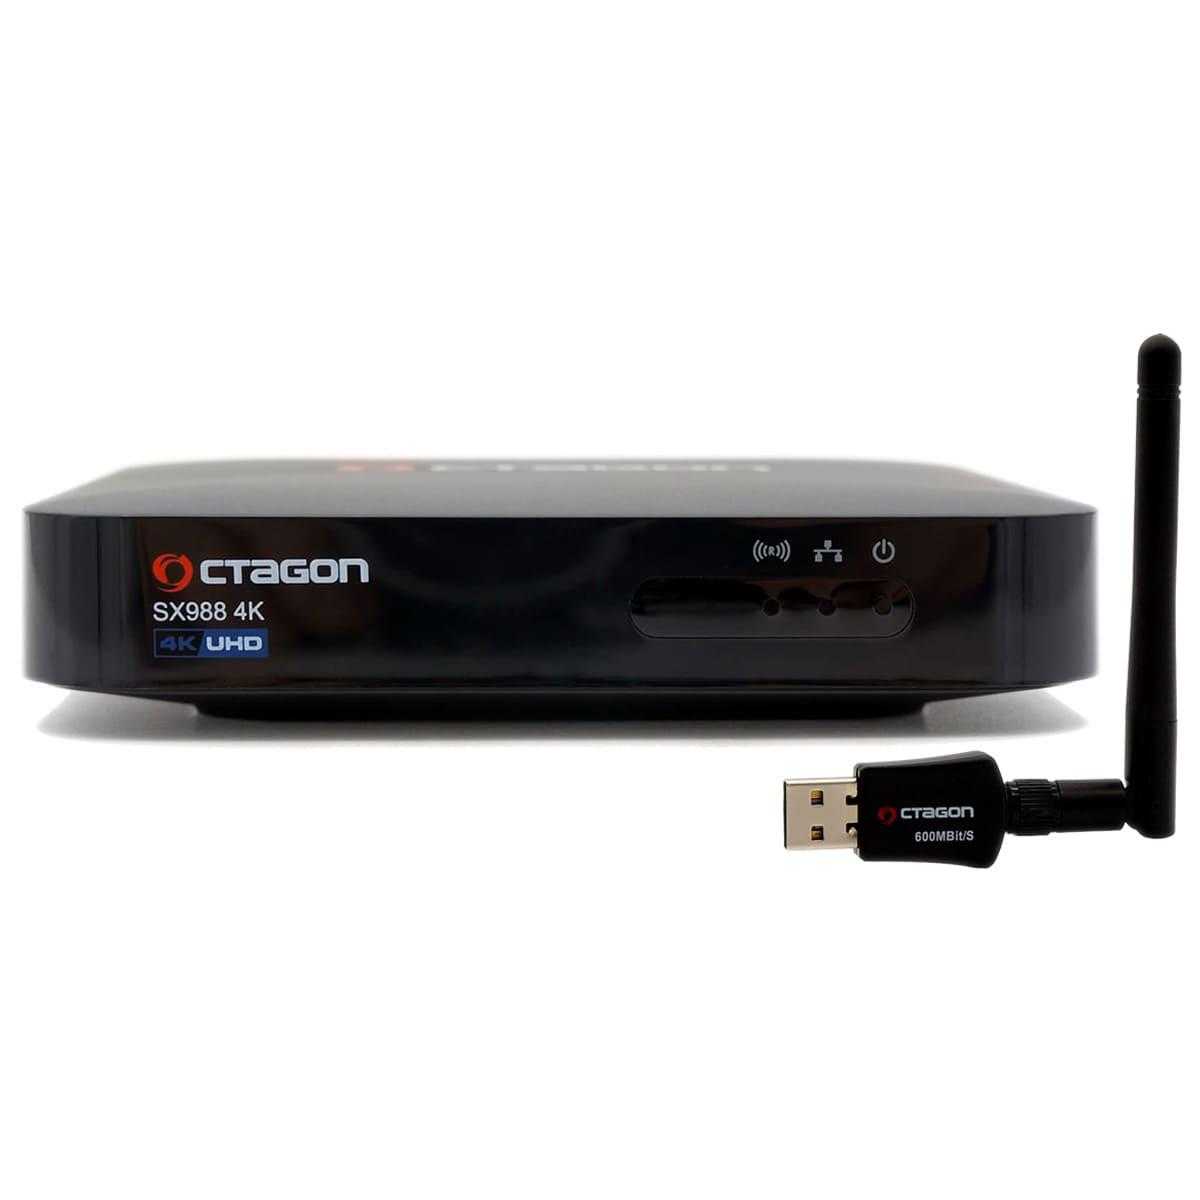 Octagon SX988 4K UHD Linux E2 IP-Receiver mit 600 MBit/s WLAN Adapter (LAN HDMI USB schwarz) von Octagon